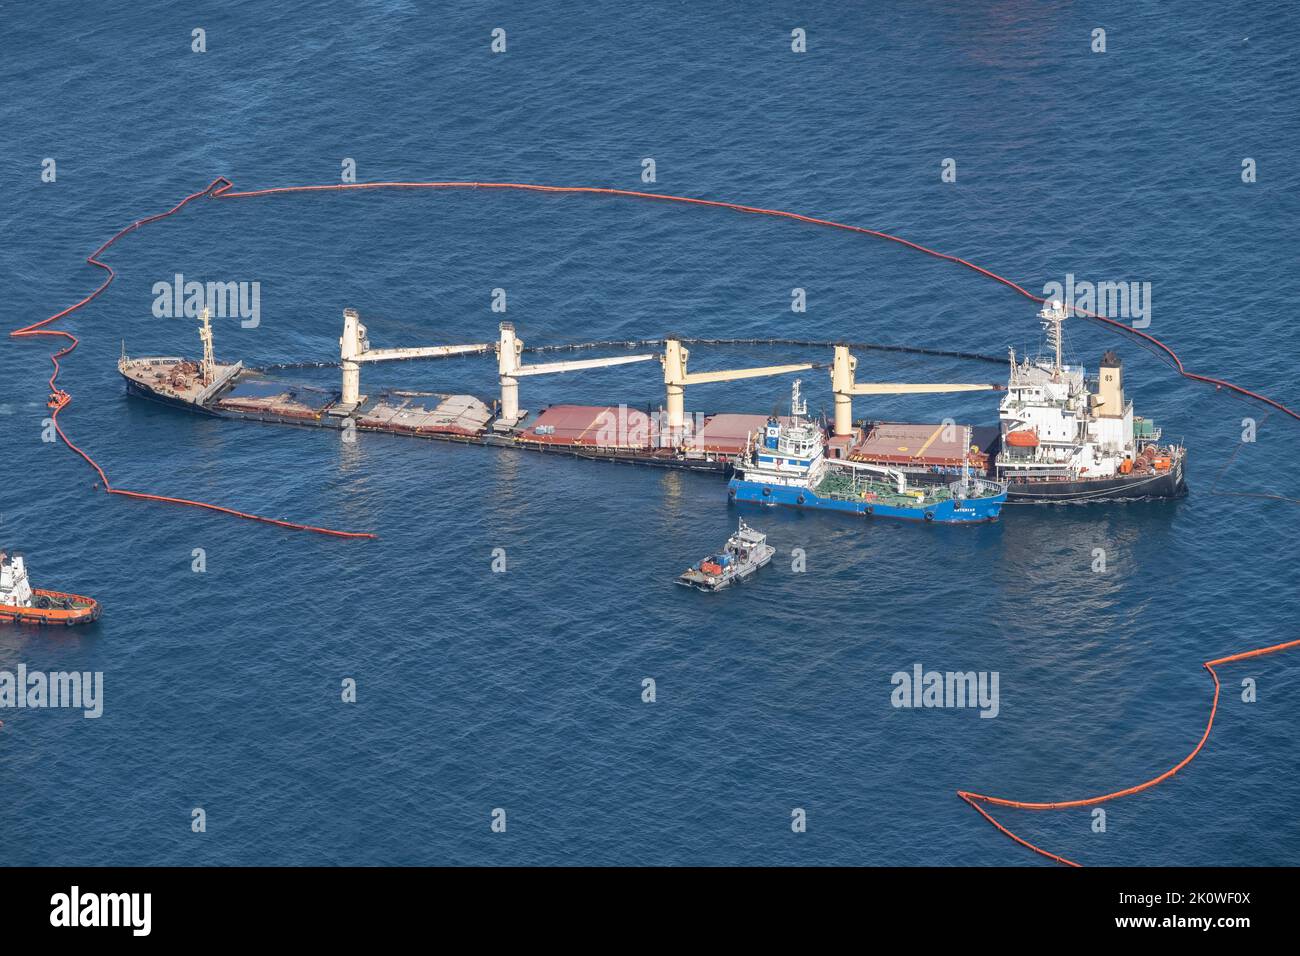 Le transporteur de vrac OS 35 qui est entré en collision avec le méthanier Adam au large de Gibraltar, se trouve enchassé pendant que les équipages nettoient et empêchent la propagation du pétrole. Banque D'Images